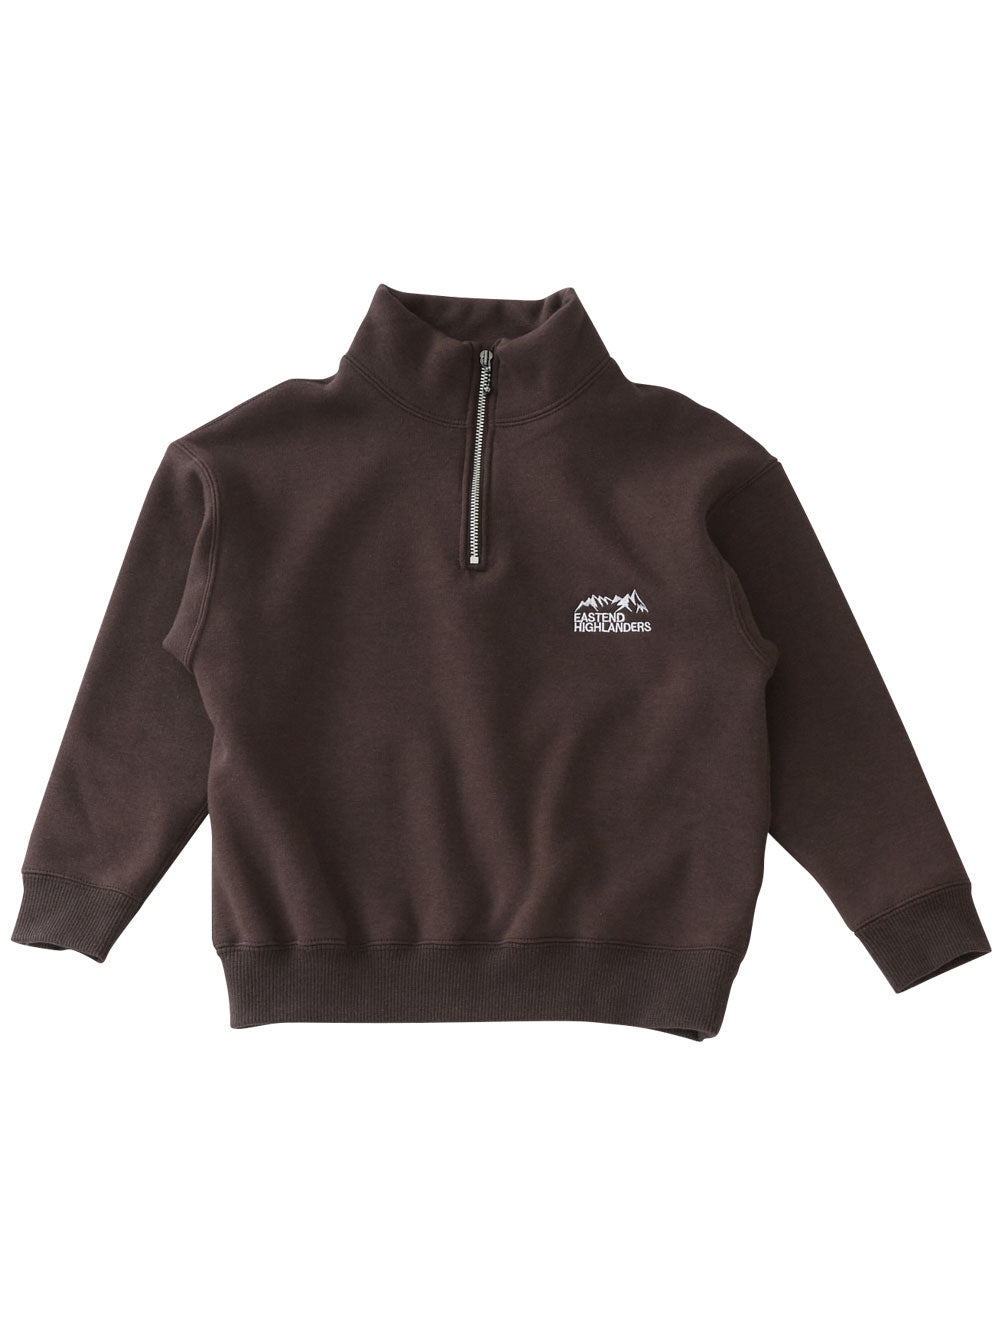 PREORDER: Chocolate Half Zip Sweatshirt